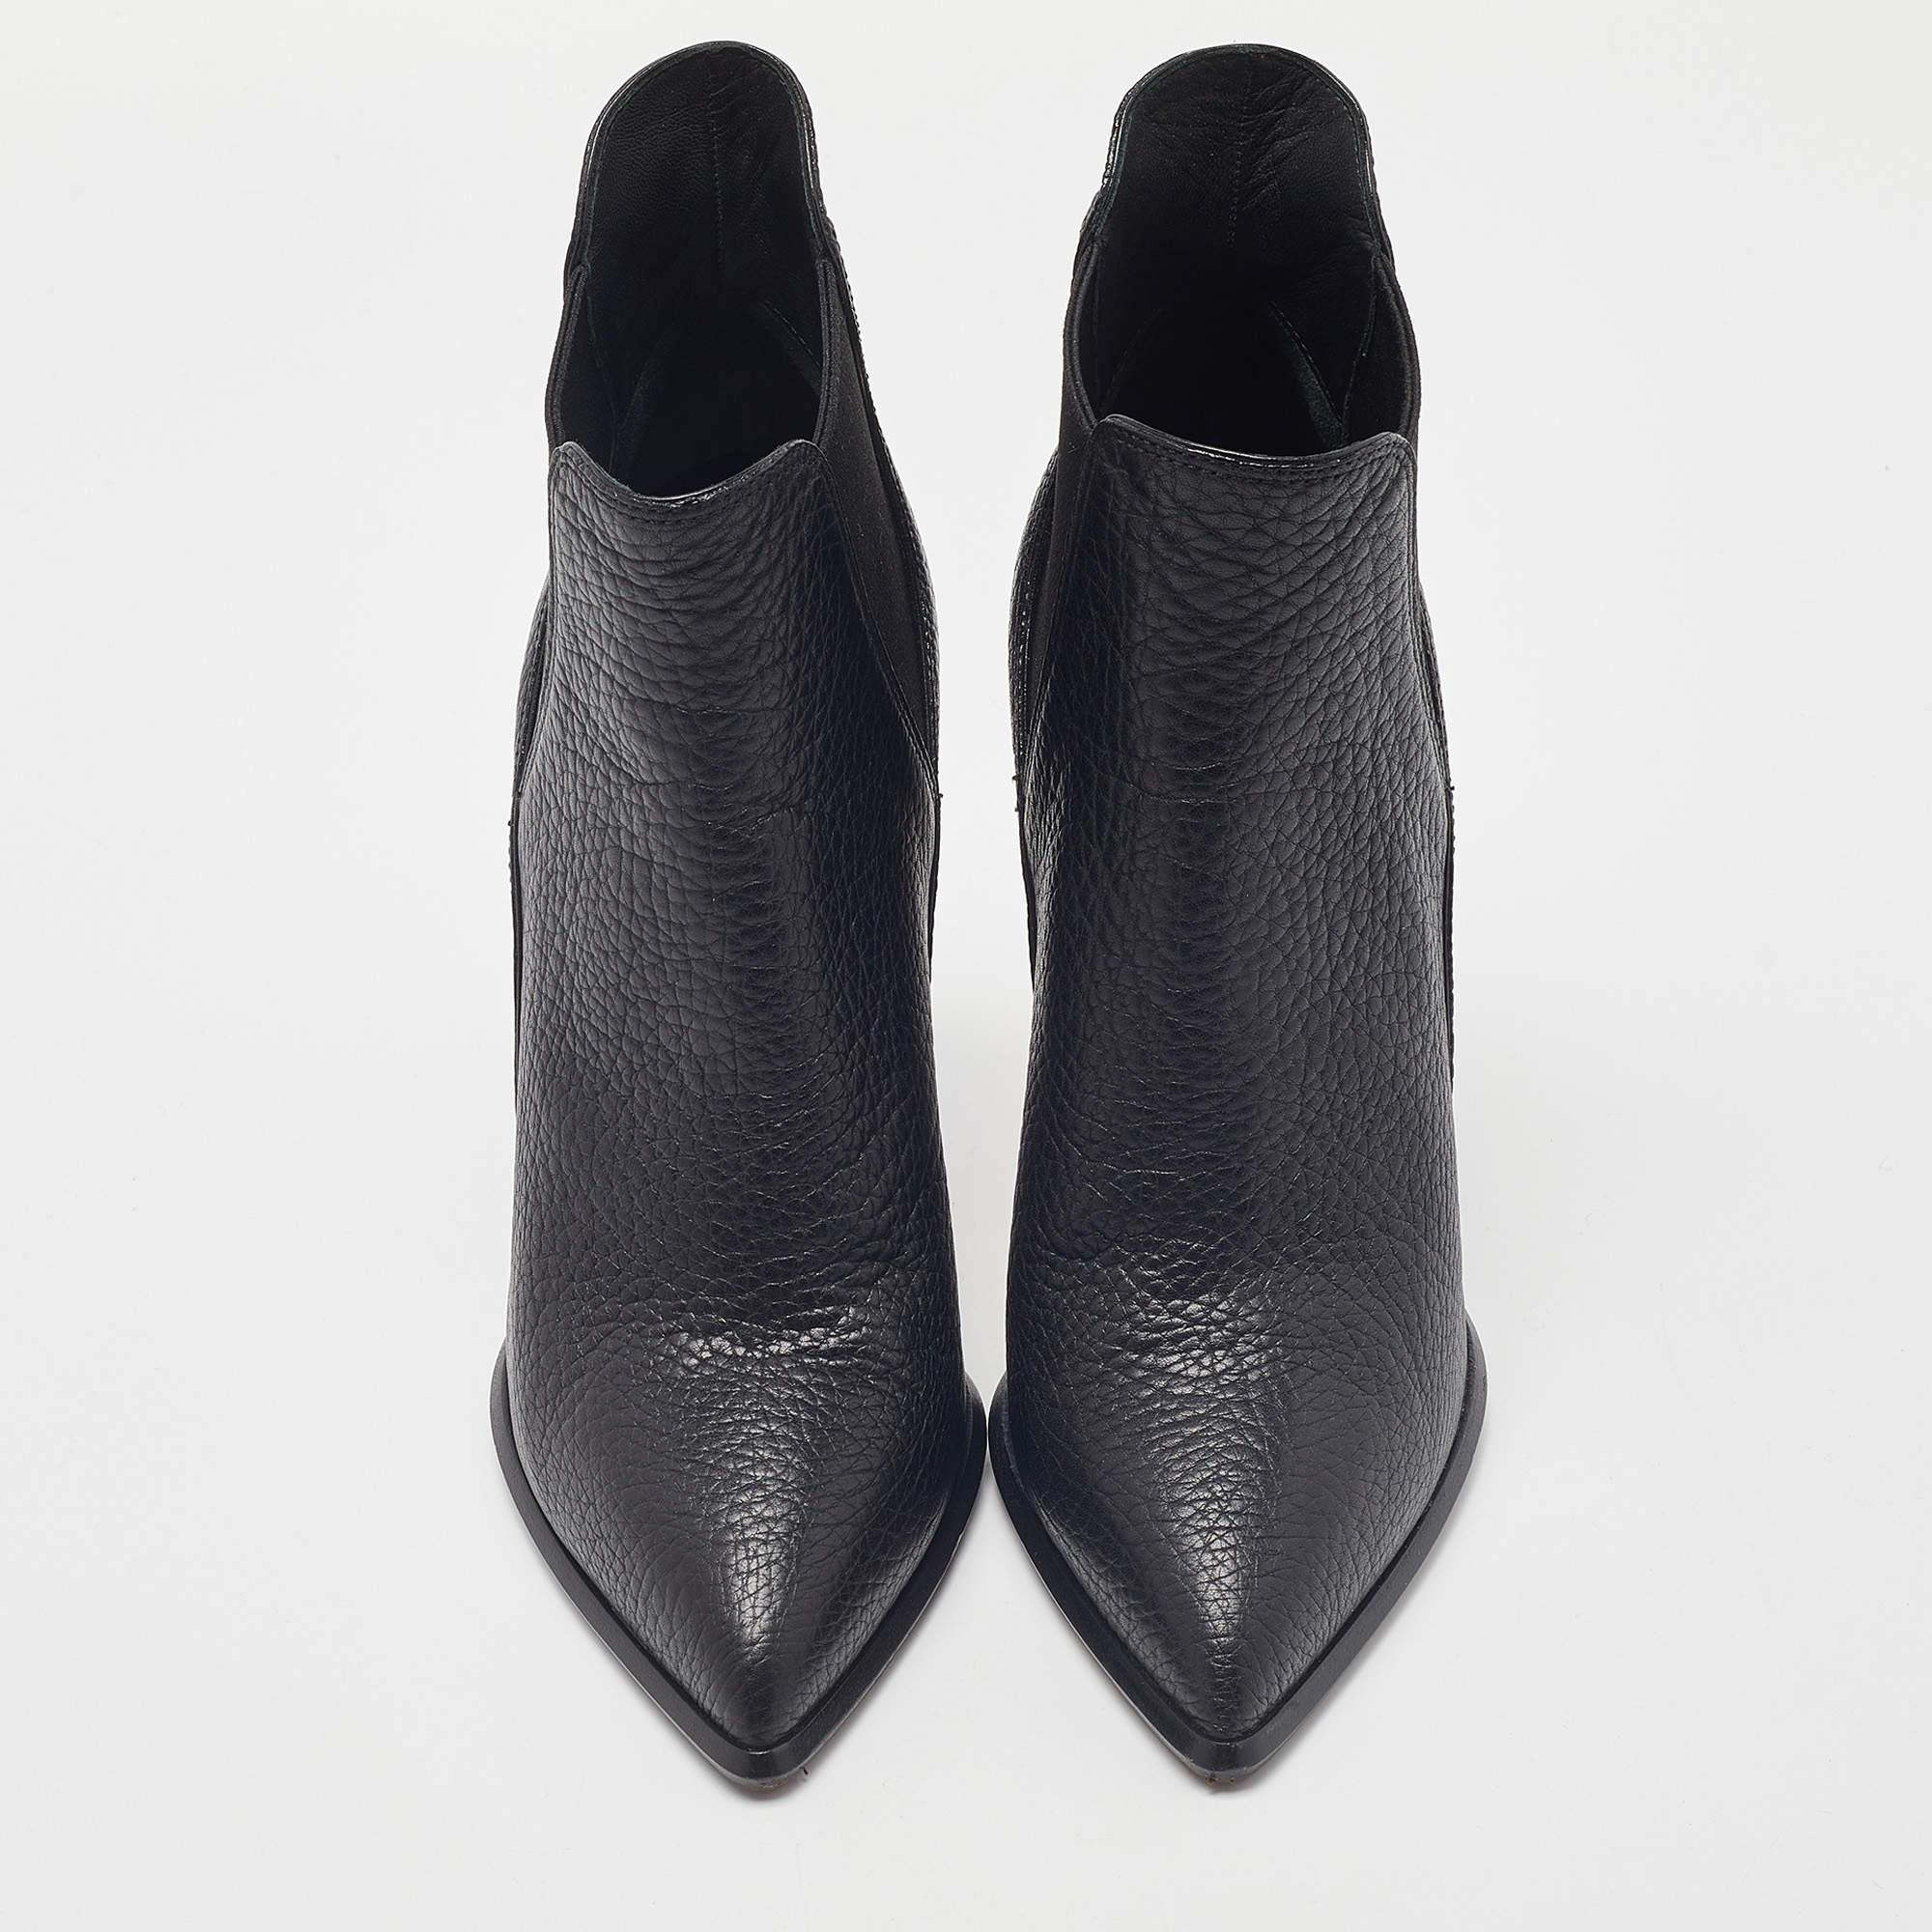 Genießen Sie die modischsten Tage mit diesen stilvollen schwarzen Louis Vuitton-Stiefeletten. Modernes Design und Handwerkskunst sorgen dafür, dass Sie bequem und schick sind!

Enthält: Originalverpackung, Infobroschüre, extra Fersenspitze

